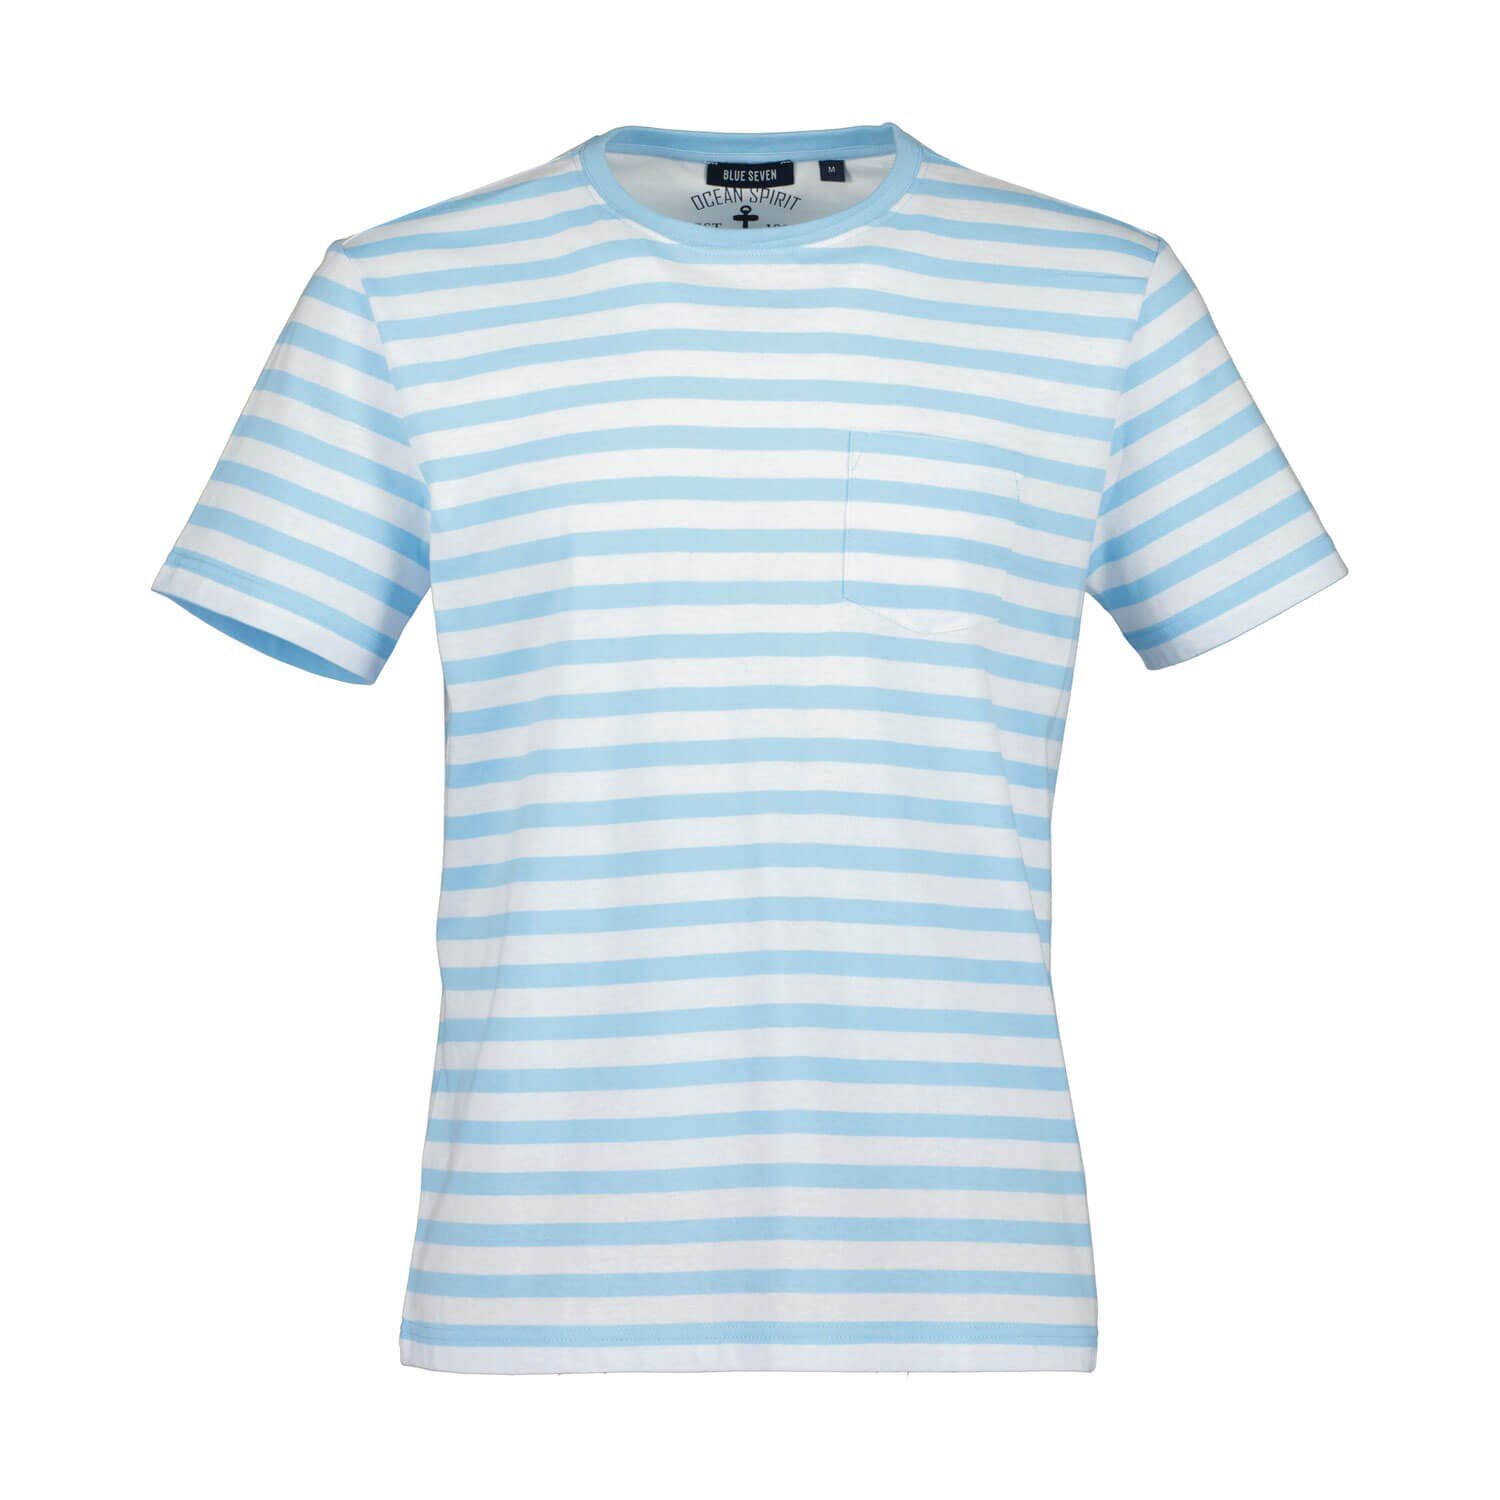 Blue Seven T-Shirt Herren Sommershirt mit Streifen - Gestreiftes Rundhalsshirt